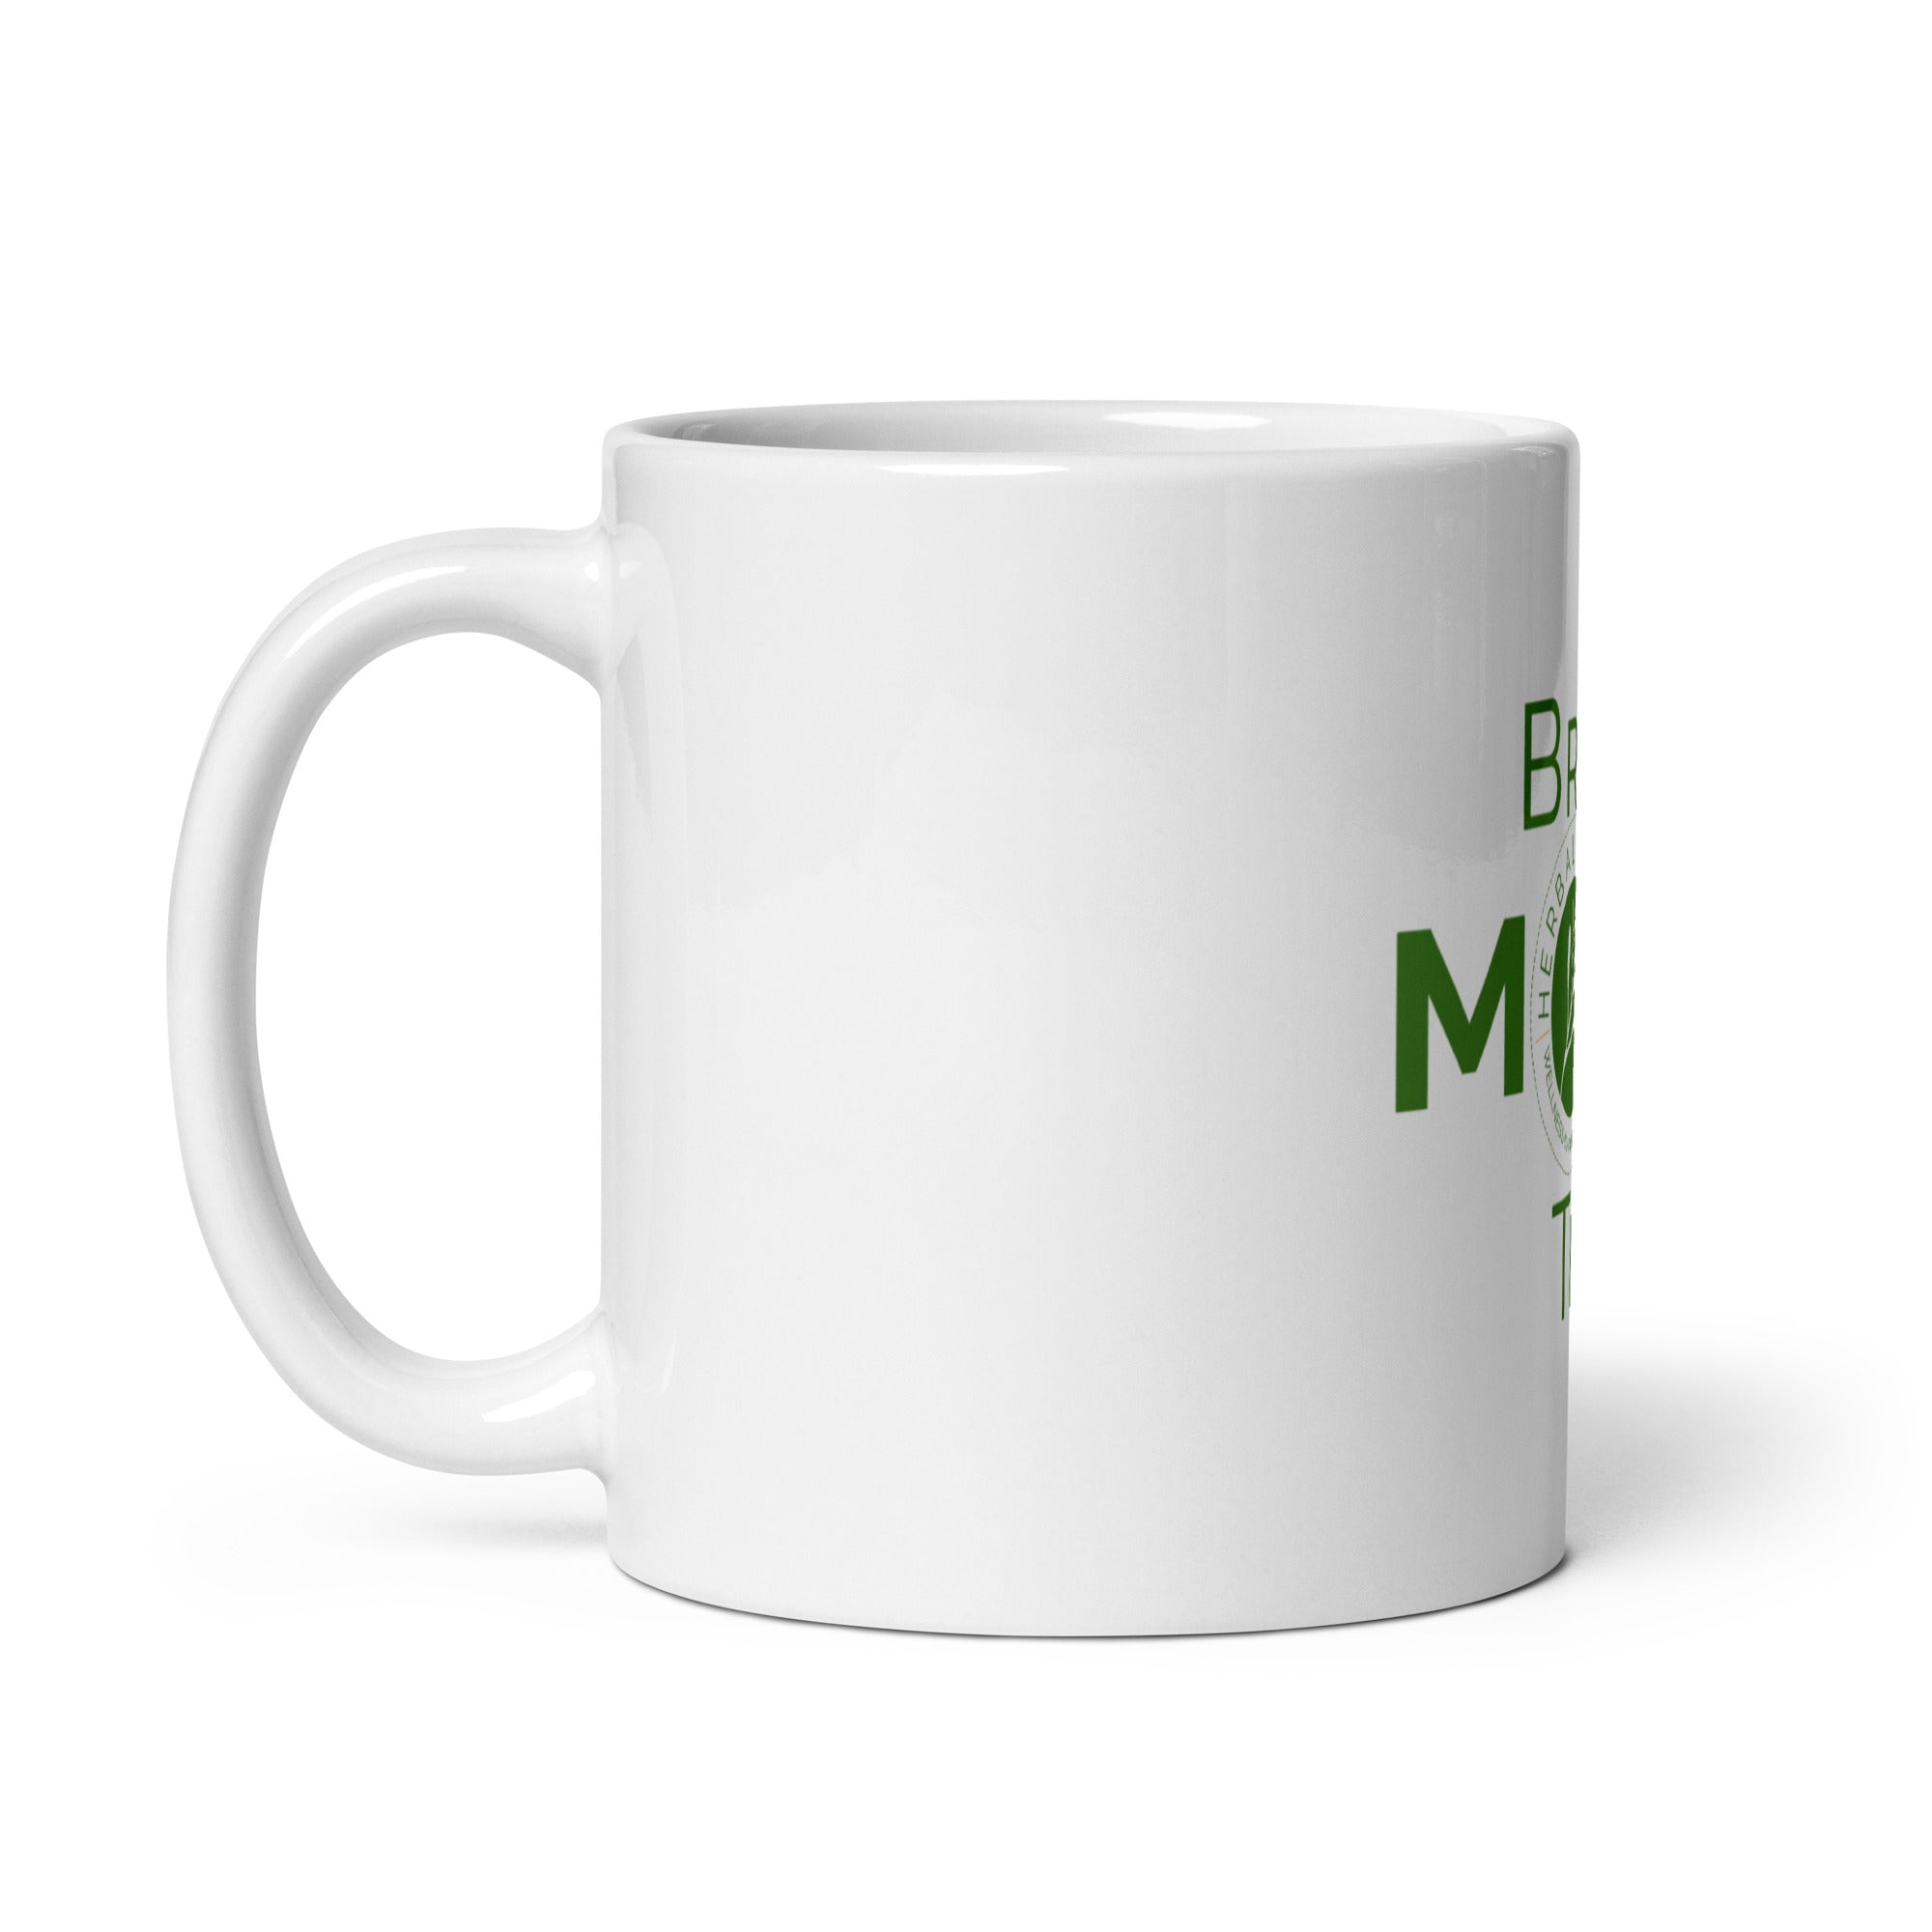 Brew More Tea Mug